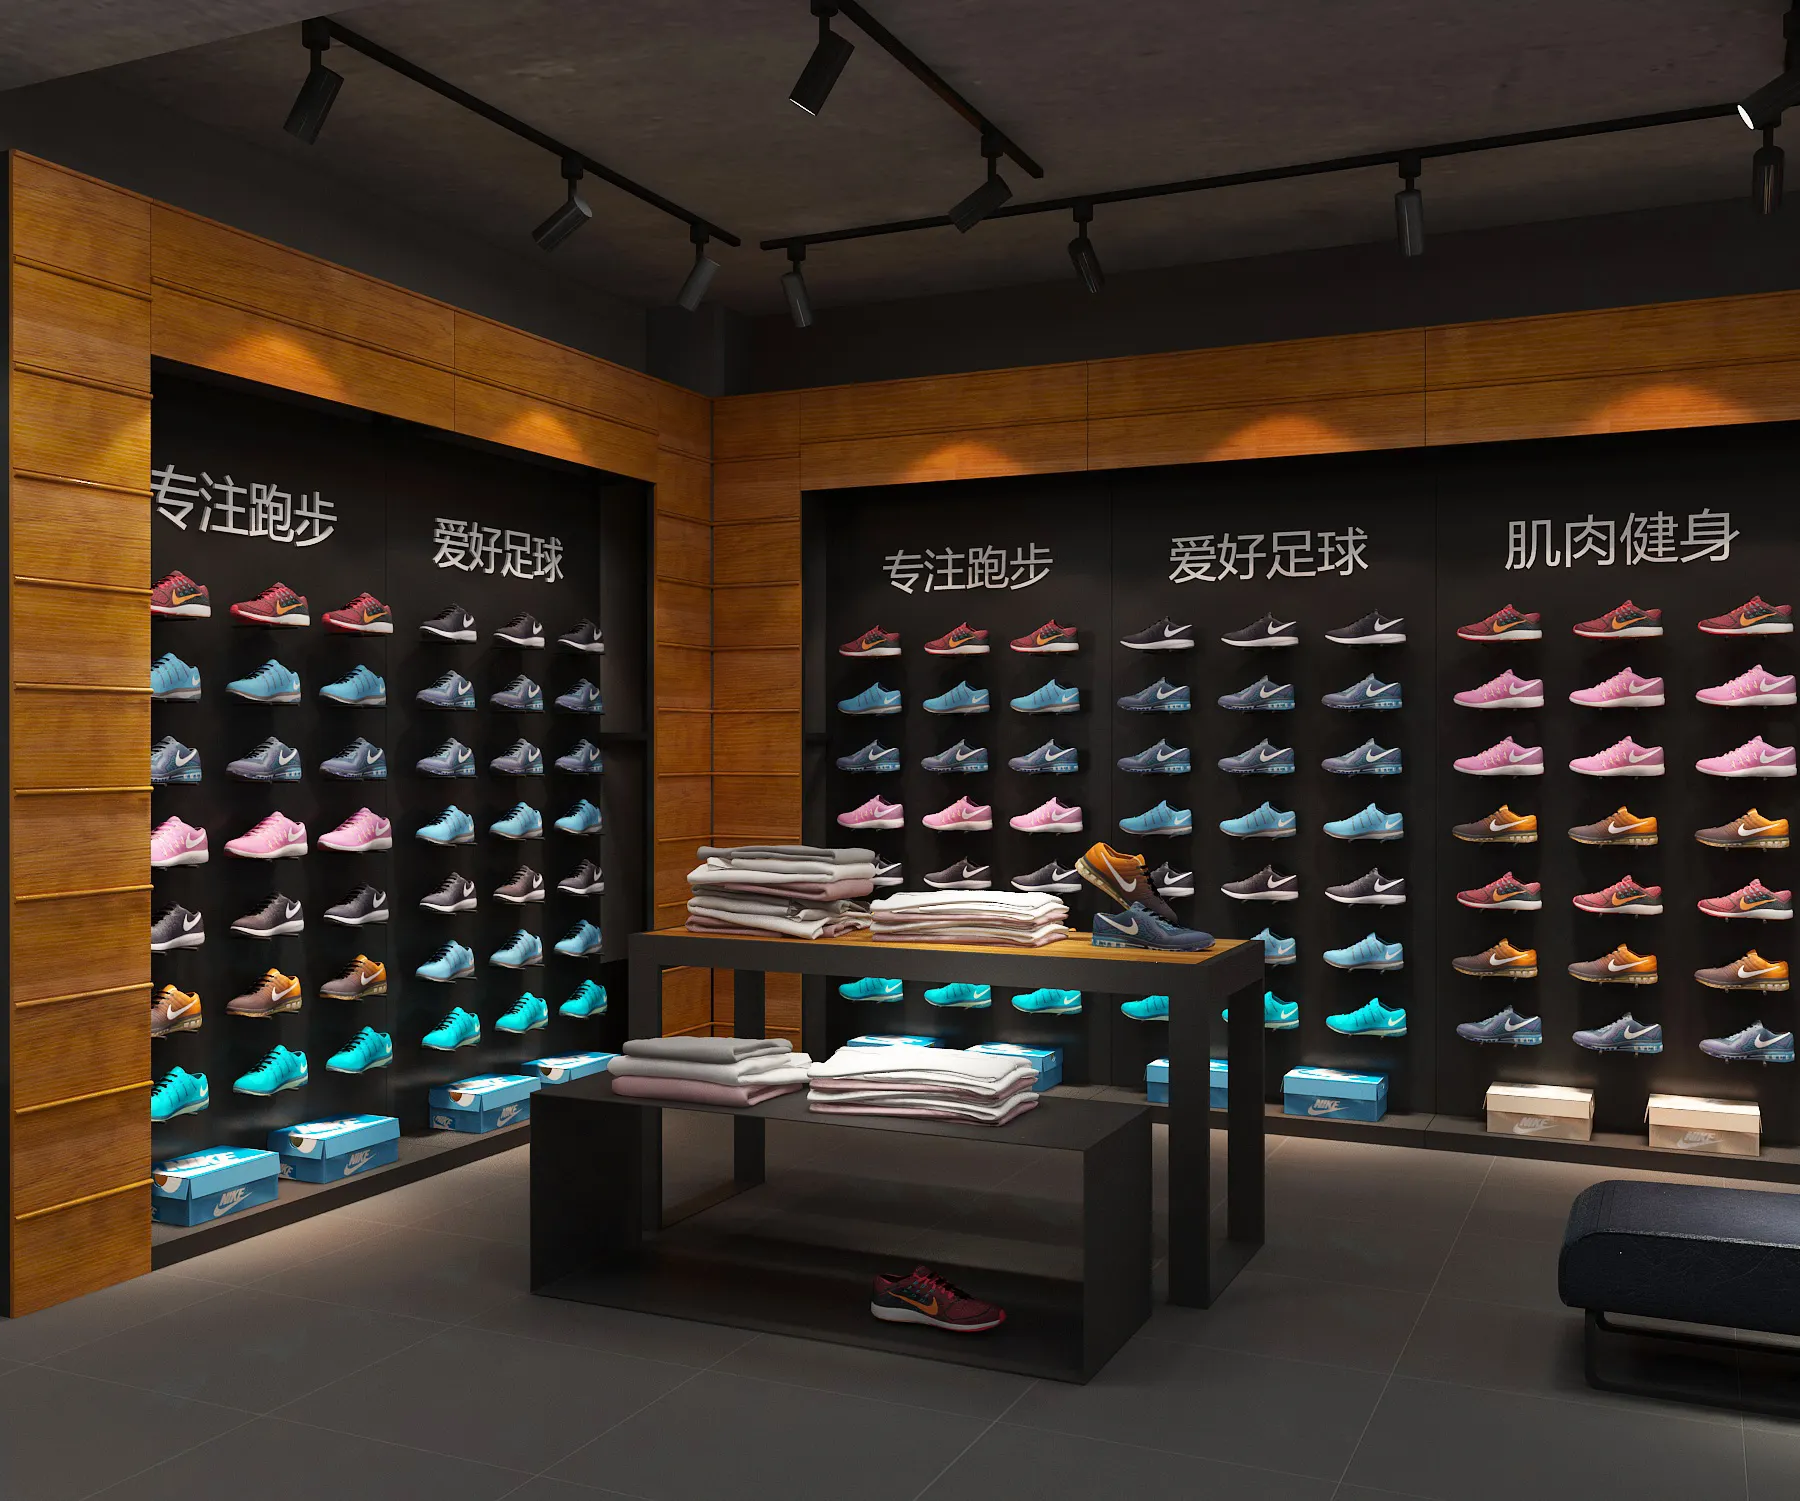 Estante de exhibición deportivo de diseño libre, tienda de zapatos deportivos para hombres, estante de pared de exhibición de diseño interior